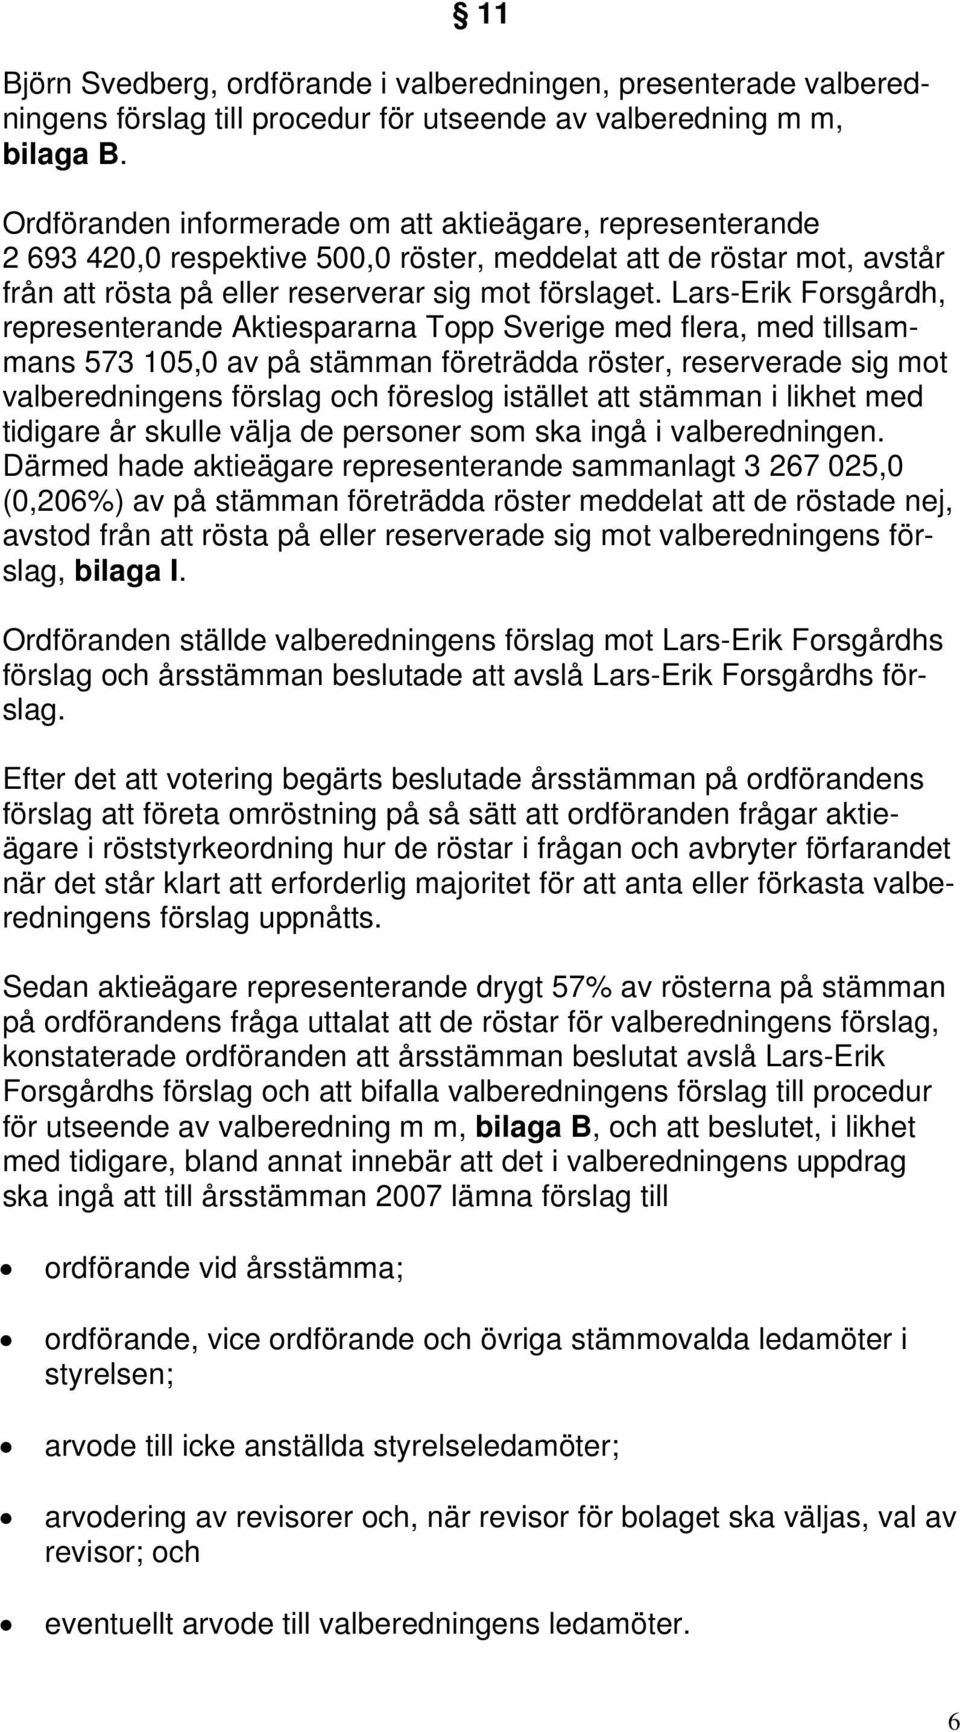 Lars-Erik Forsgårdh, representerande Aktiespararna Topp Sverige med flera, med tillsammans 573 105,0 av på stämman företrädda röster, reserverade sig mot valberedningens förslag och föreslog istället